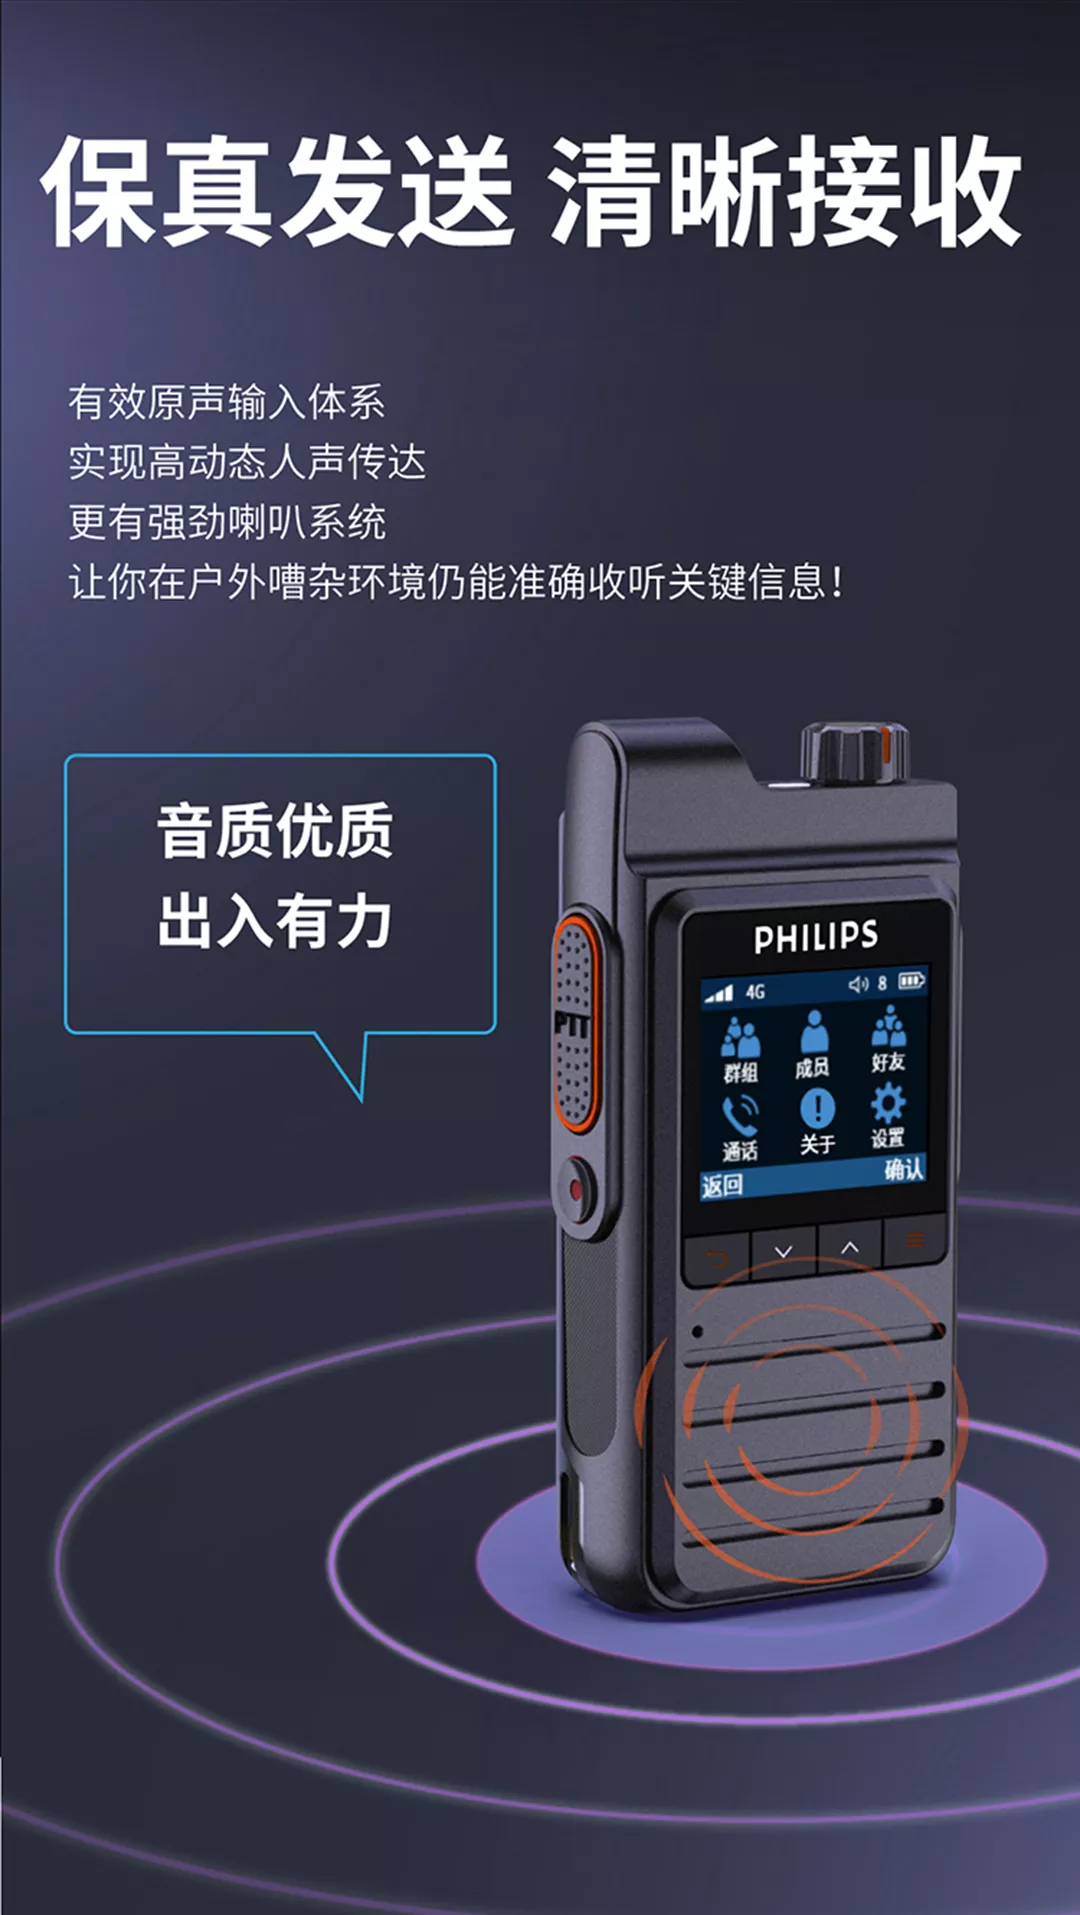 京華&飛利浦正式發布兩款專業公網智慧語音終端新品